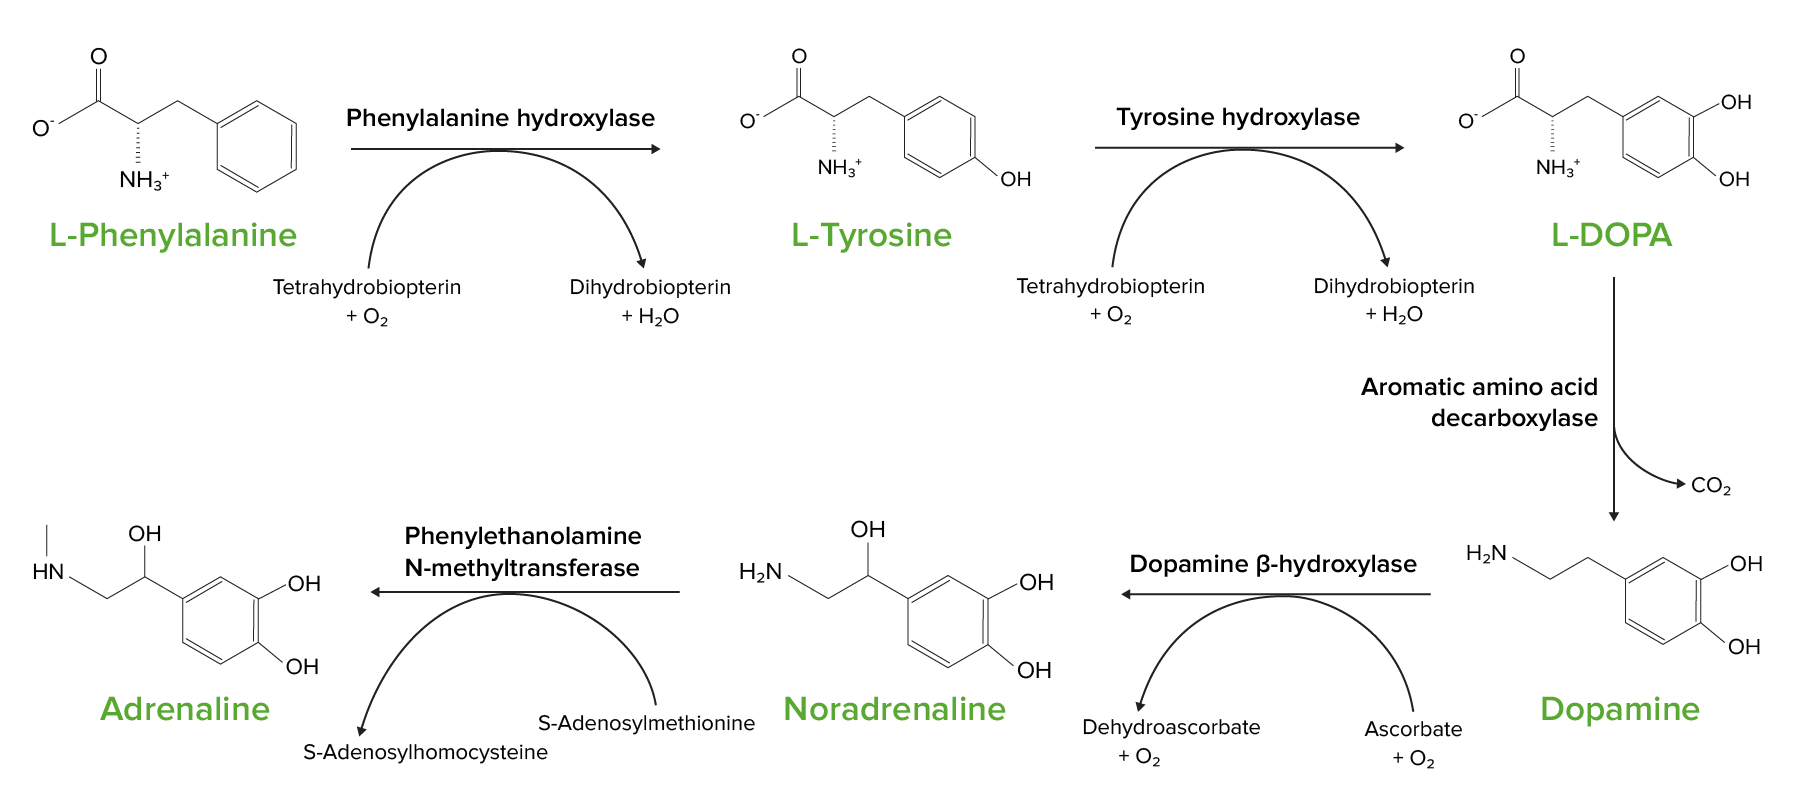 Тирозин что это такое. Фенилаланин тирозин схема. Гидроксилирование фенилаланина в тирозин. Окисление фенилаланина в тирозин. Фенилаланин тирозин фермент класс.